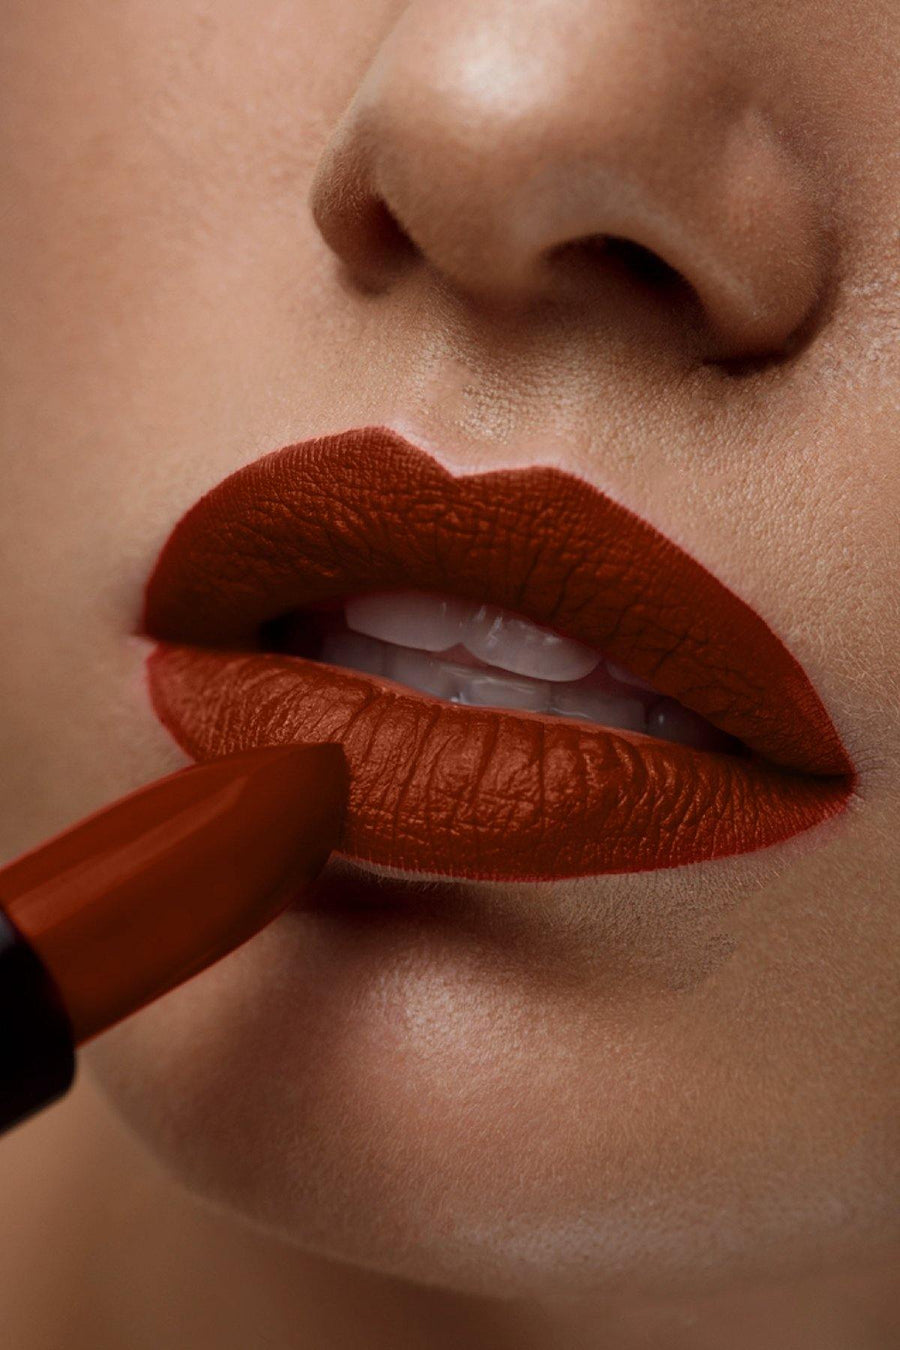 Matte Lipstick #19 - Dark Red - Blend Mineral Cosmetics